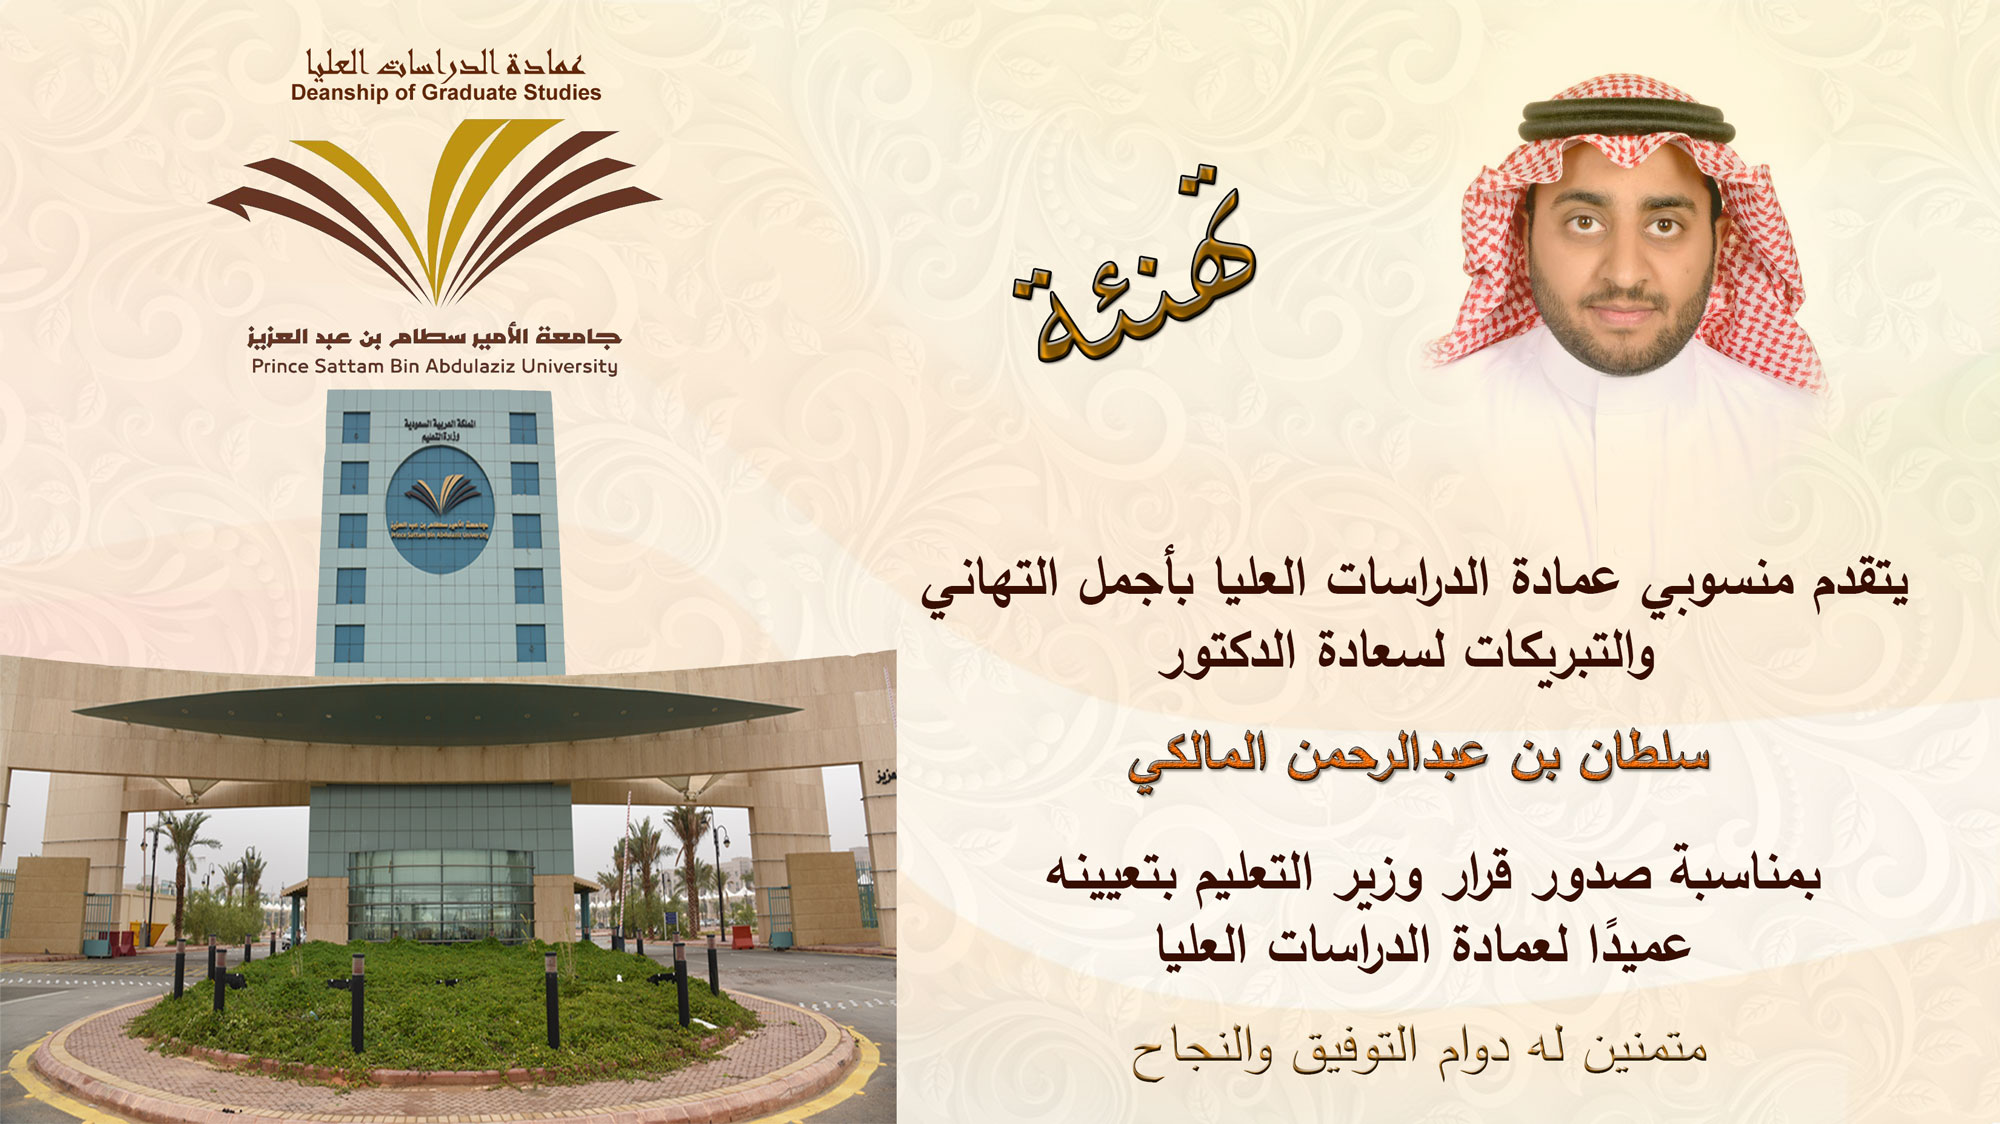 يتقدم منسوبي عمادة الدراسات العليا بأجمل التهاني والتبريكات لسعادة الدكتور سلطان بن عبدالرحمن المالكي